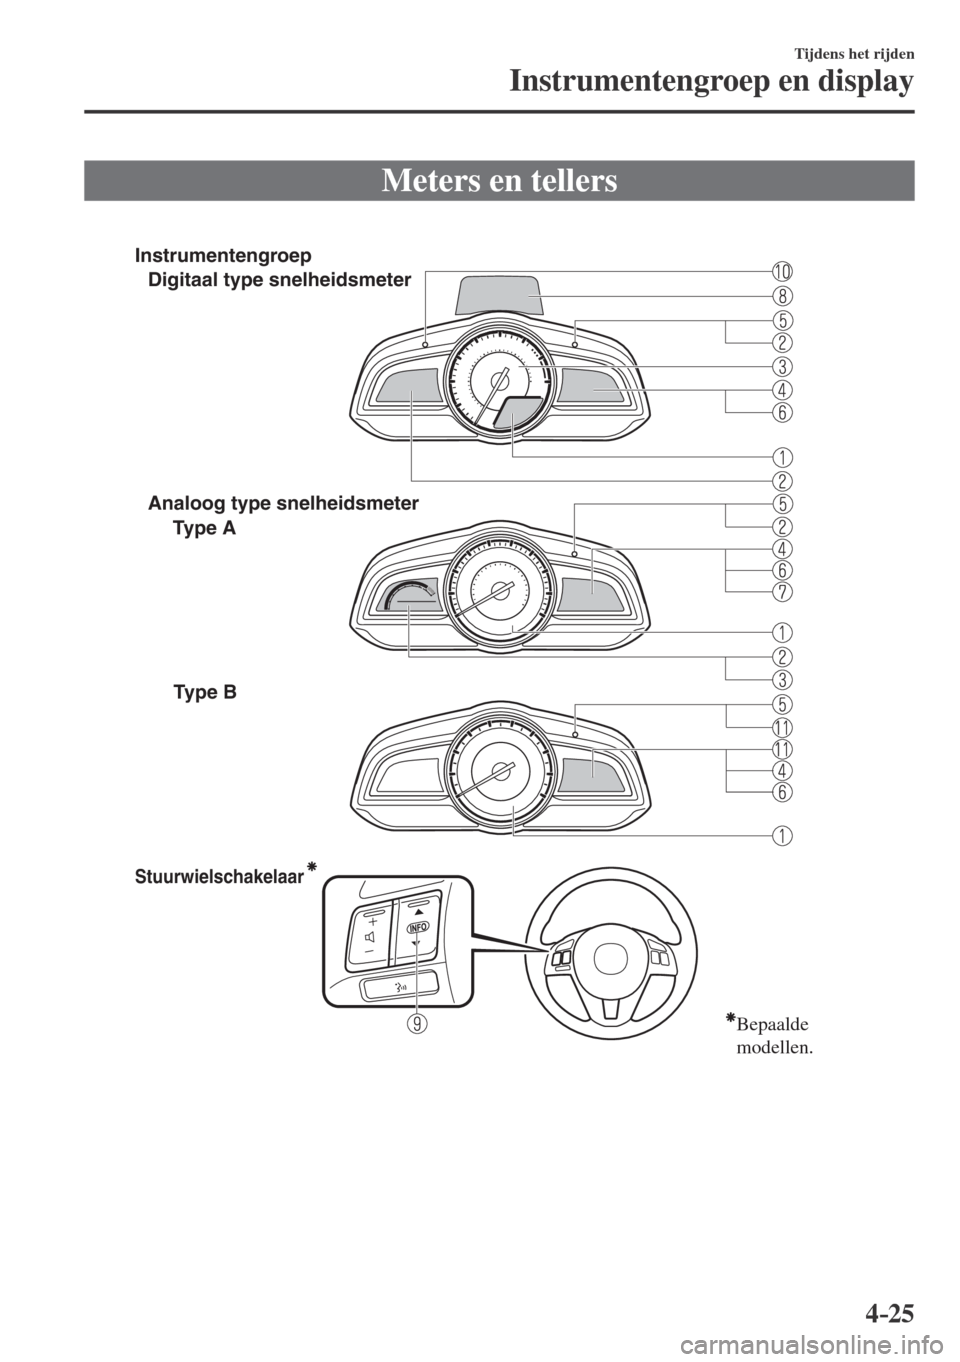 MAZDA MODEL CX-3 2016  Handleiding (in Dutch) 4–25
Tijdens het rijden
Instrumentengroep en display
              Meters  en  tellers
              
 
Stuurwielschakelaar
Bepaalde 
modellen. 
Type A    Digitaal type snelheidsmeter 
 Analoog type